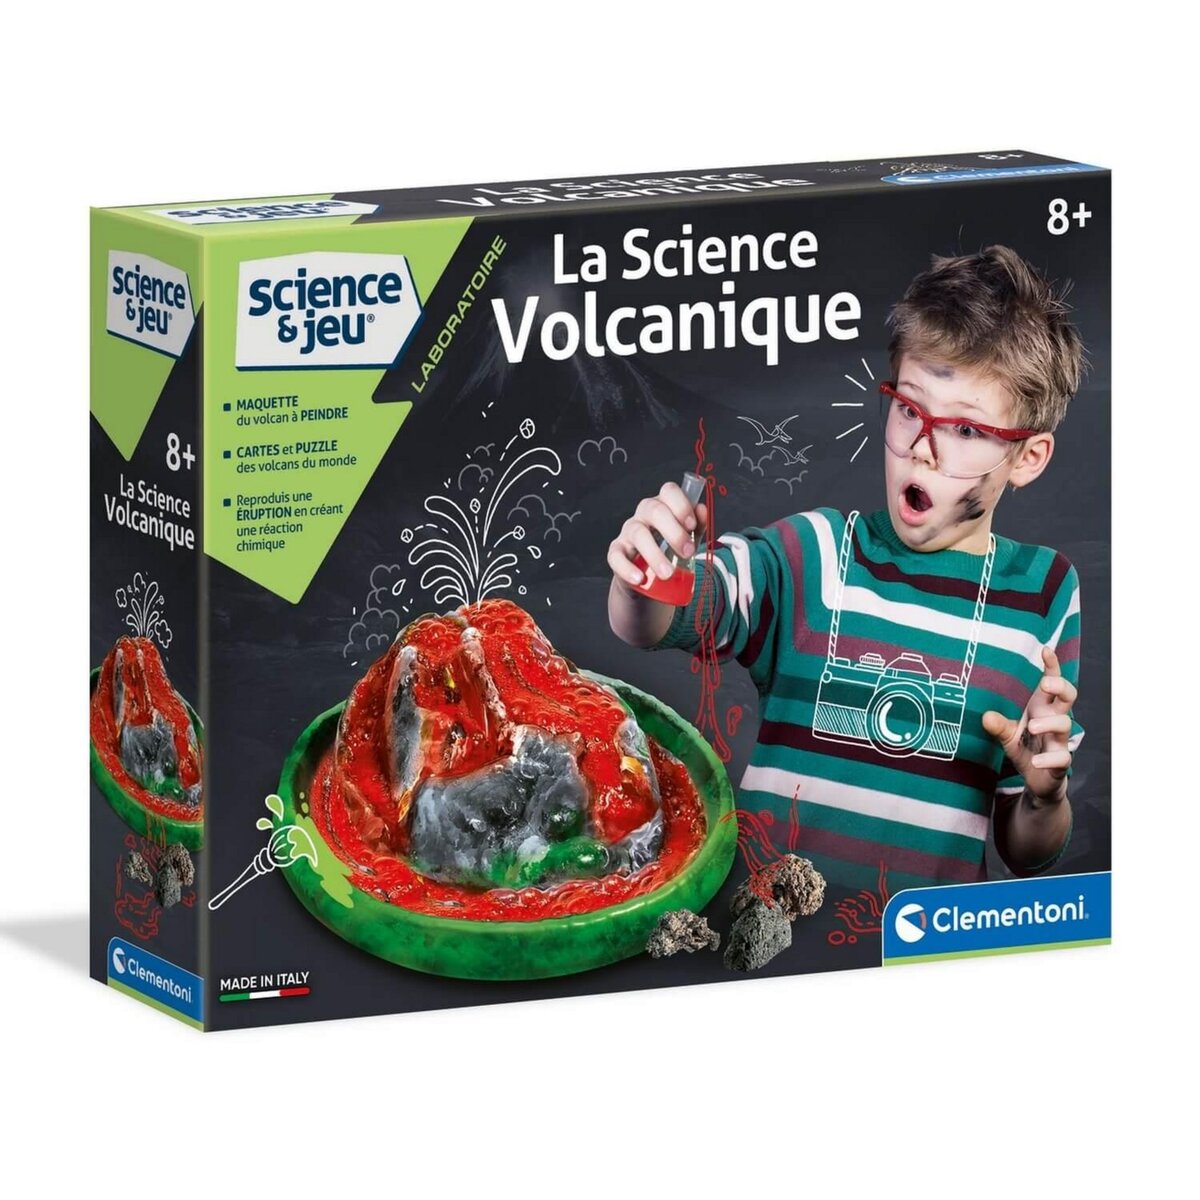 CLEMENTONI Kit Science et jeu : La science volcanique pas cher 